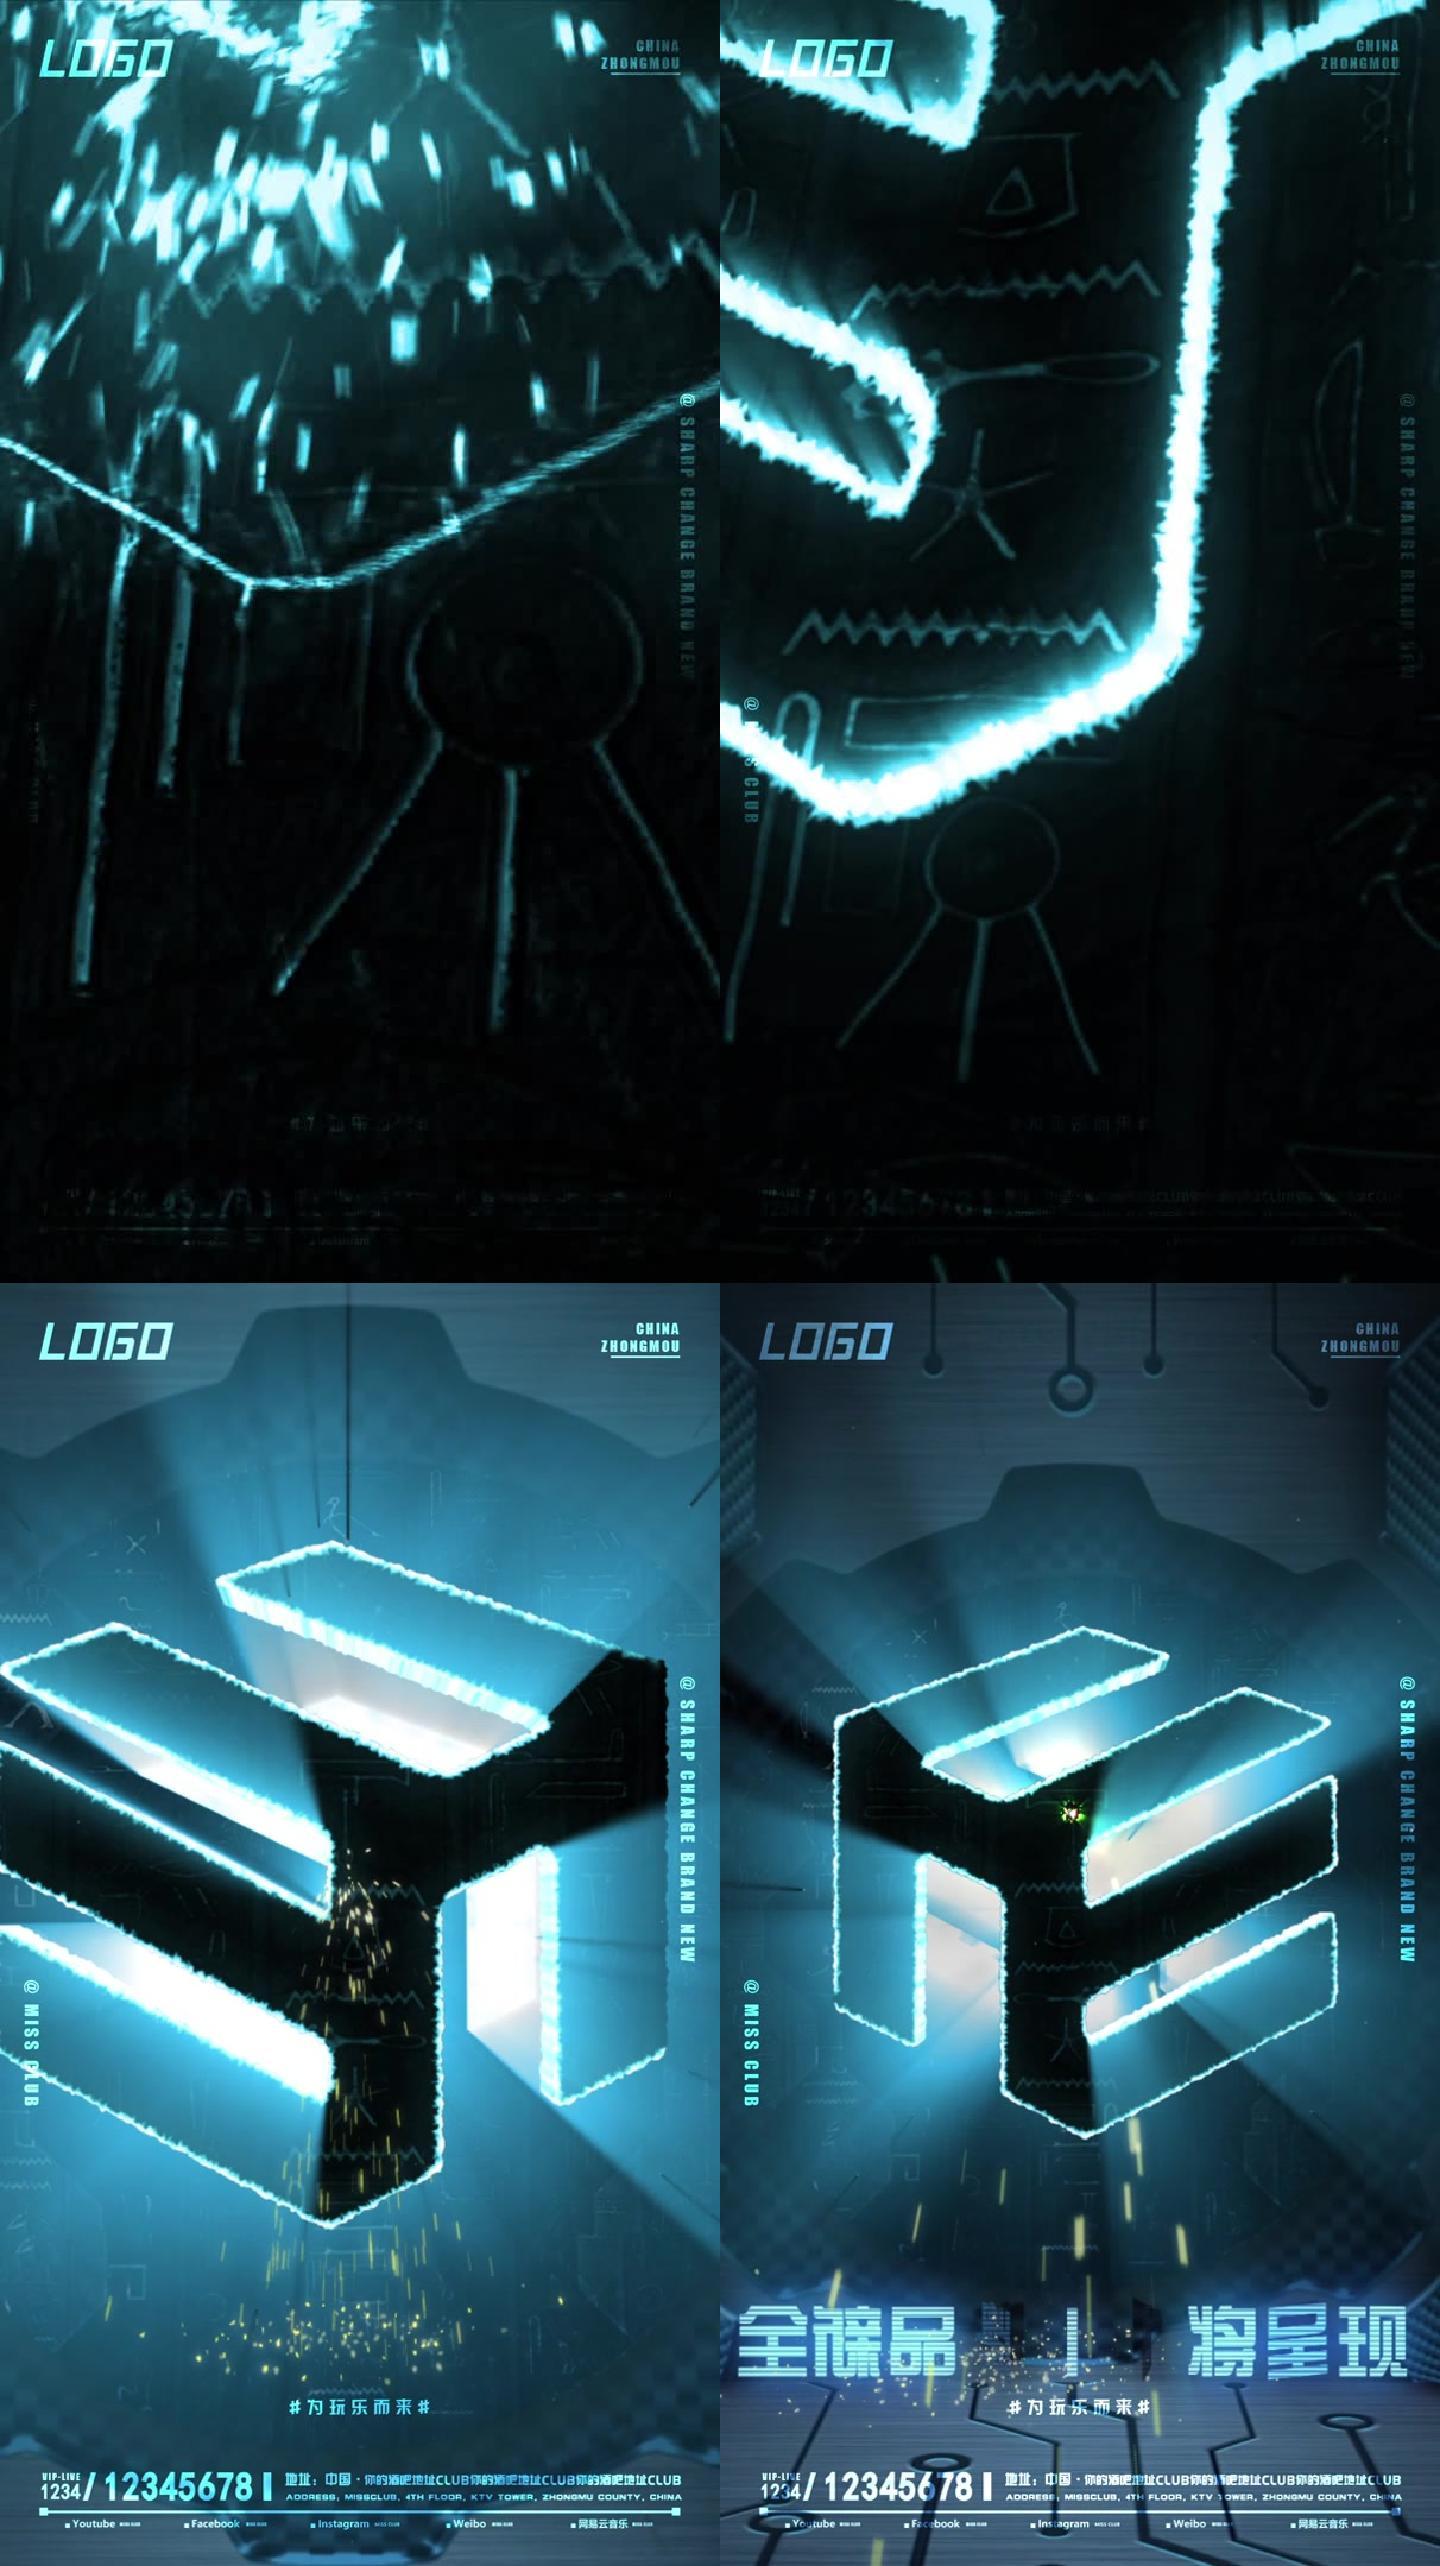 激光切割出LOGO 开业倒计时动态海报